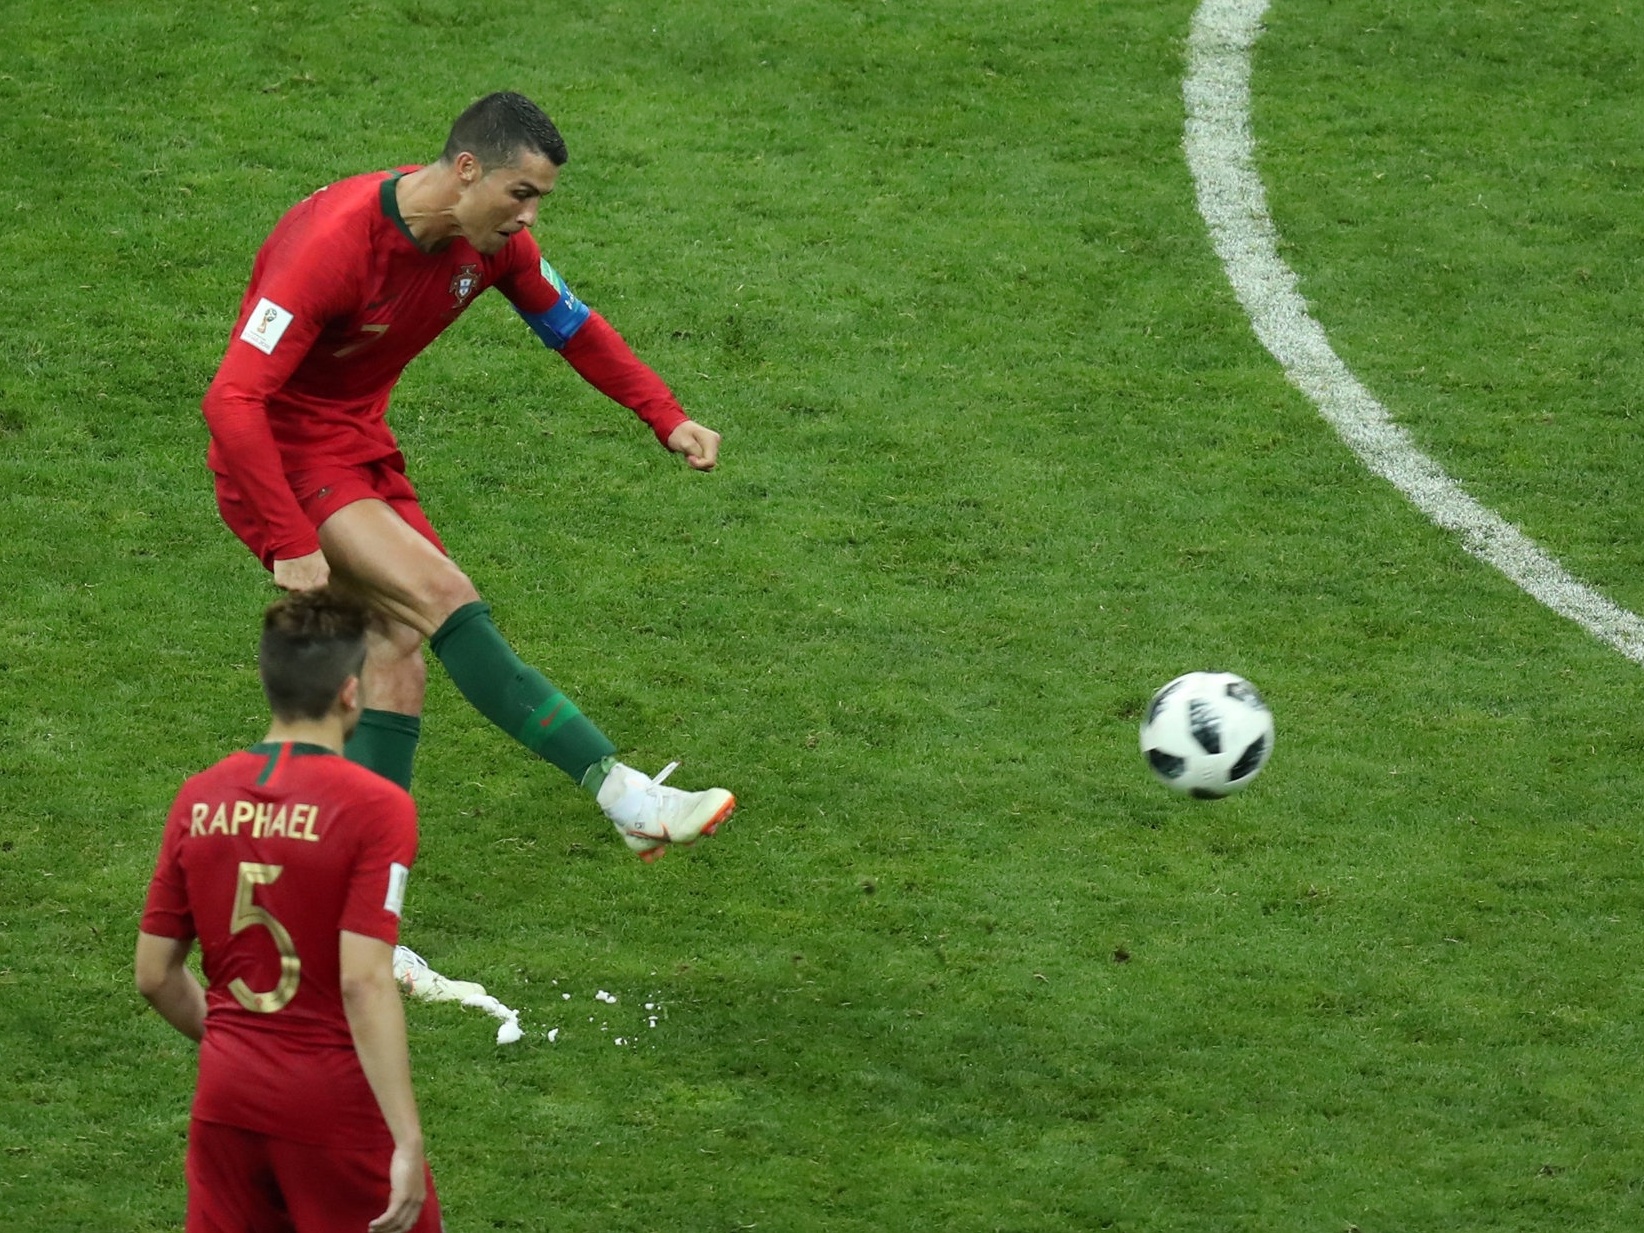 Cristiano Ronaldo se prepara para cobrança de falta contra a Espanha no  primeiro jogo da Copa do Mundo Rús…